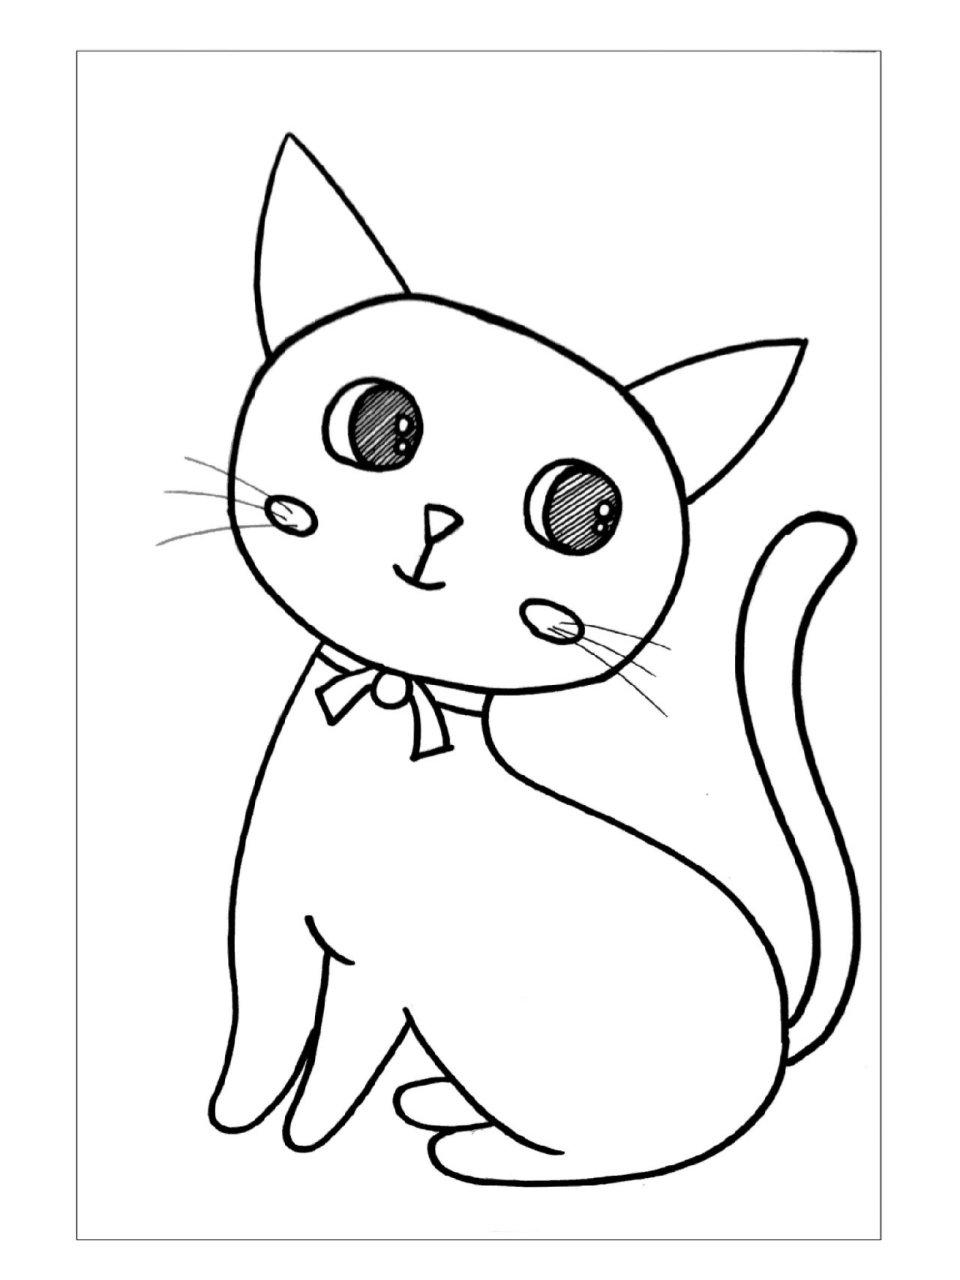 《猫咪》黑白线描画